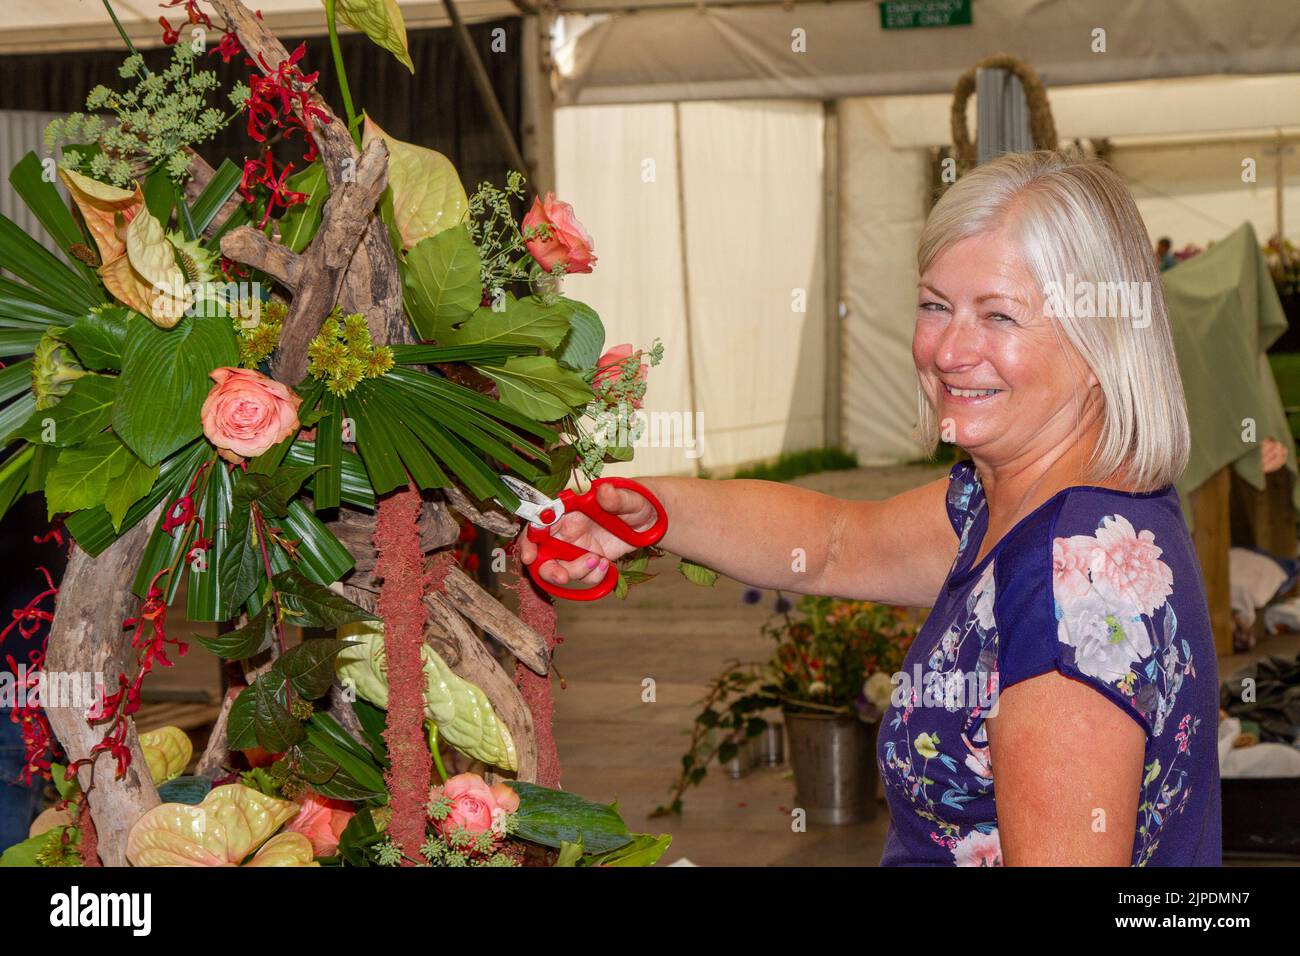 Catherine Baines ' Floral Art' con su exhibición en el show independiente de flores más grande de Inglaterra, que está esperando miles de visitantes durante el evento de cuatro días. Crédito: Mediaworld Images/Alamy Live News Foto de stock